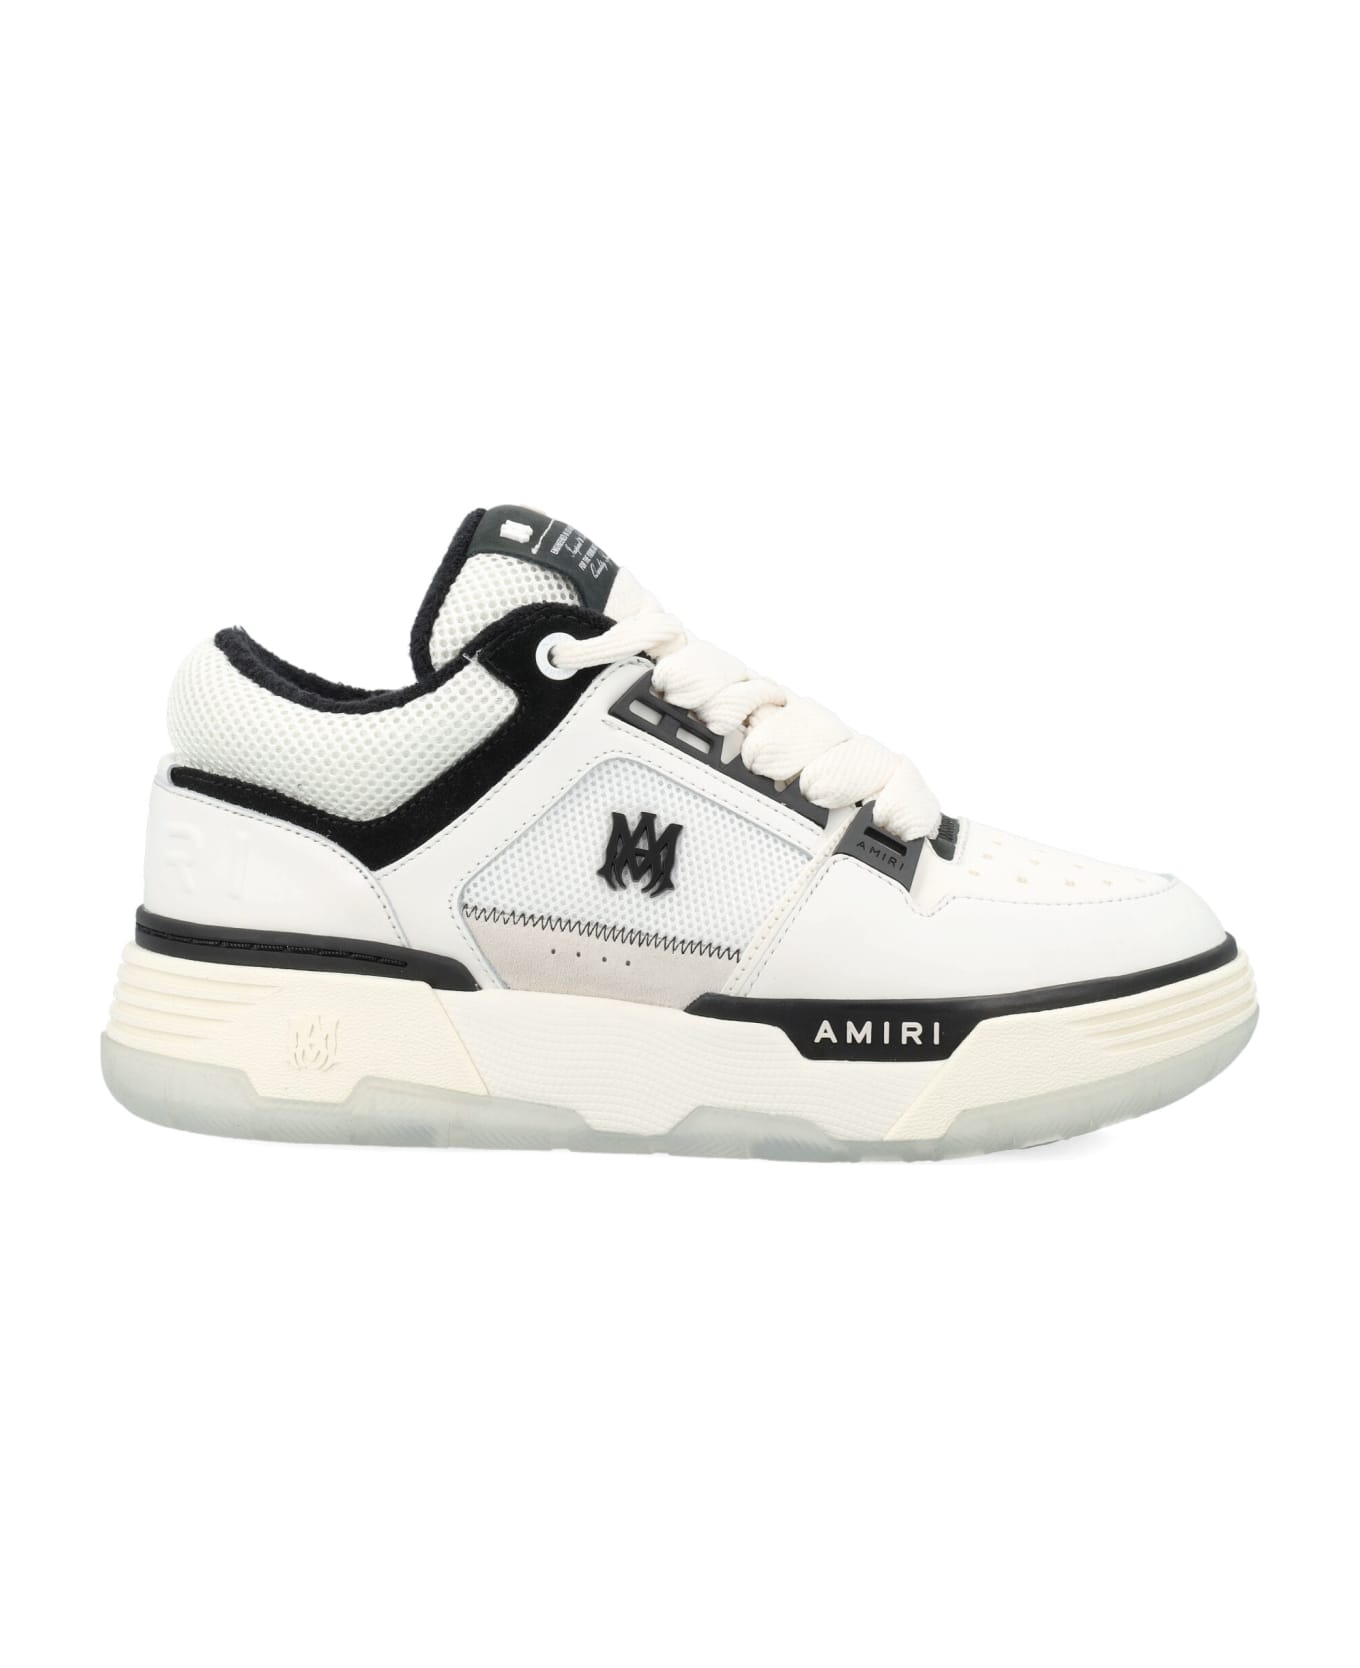 AMIRI Ma-1 Sneakers - WHITE BLACK